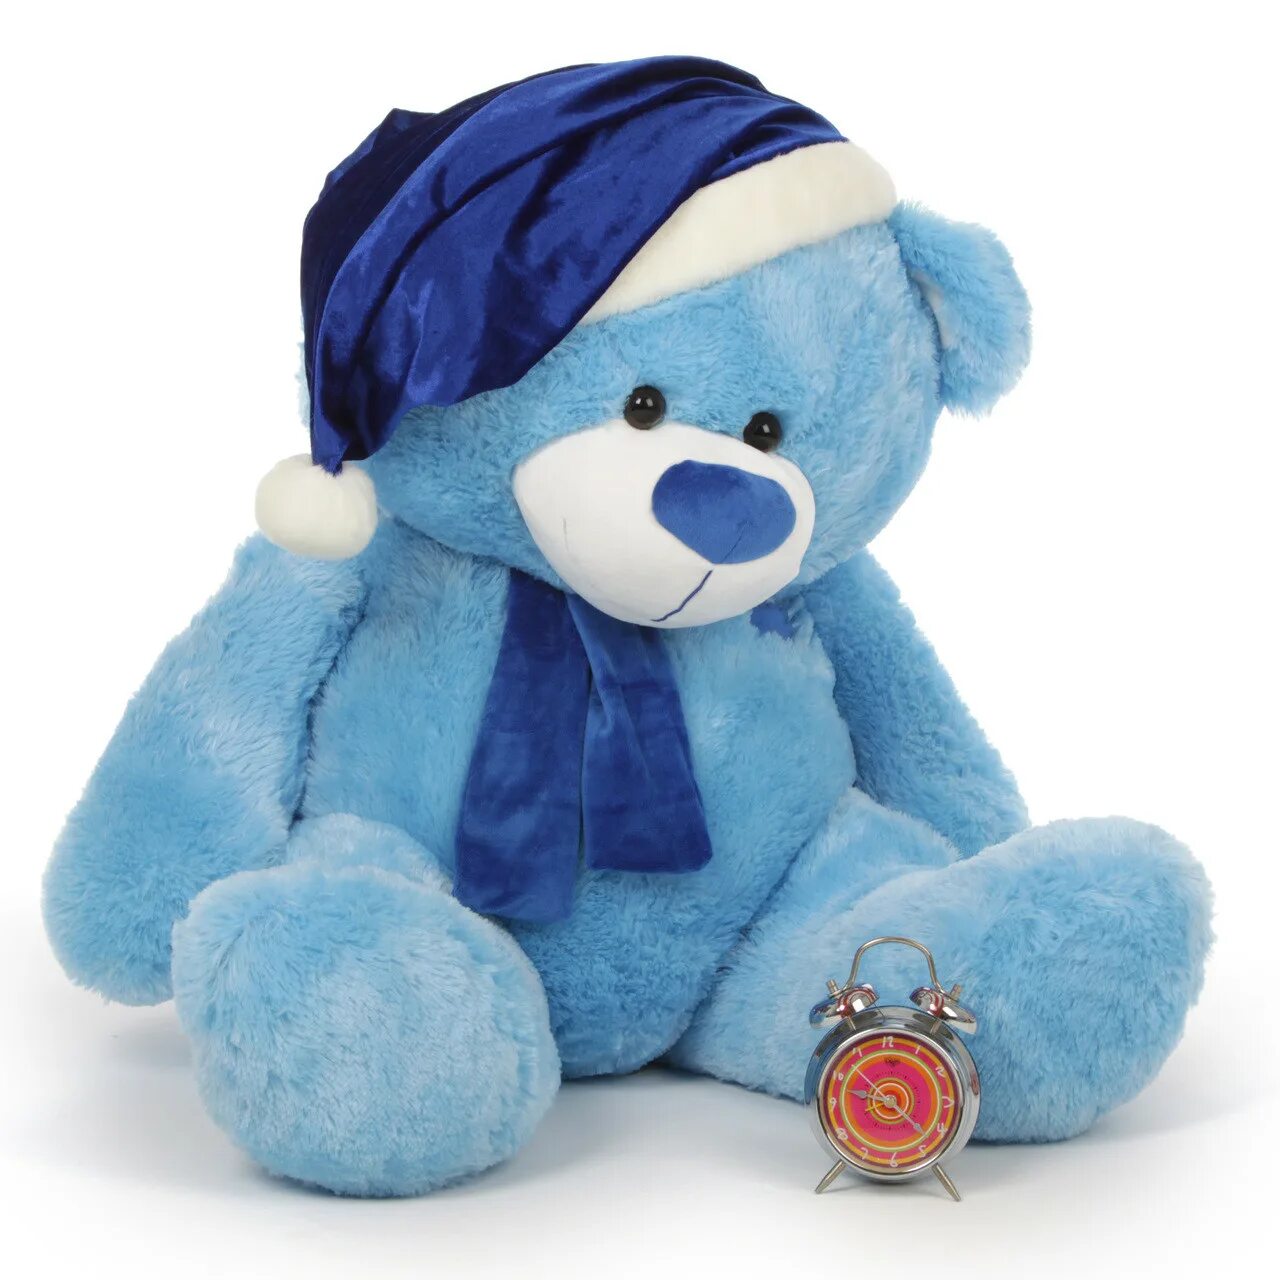 Синий Медвежонок. Мишка голубой. Синий плюш. Голубой медведь игрушка.